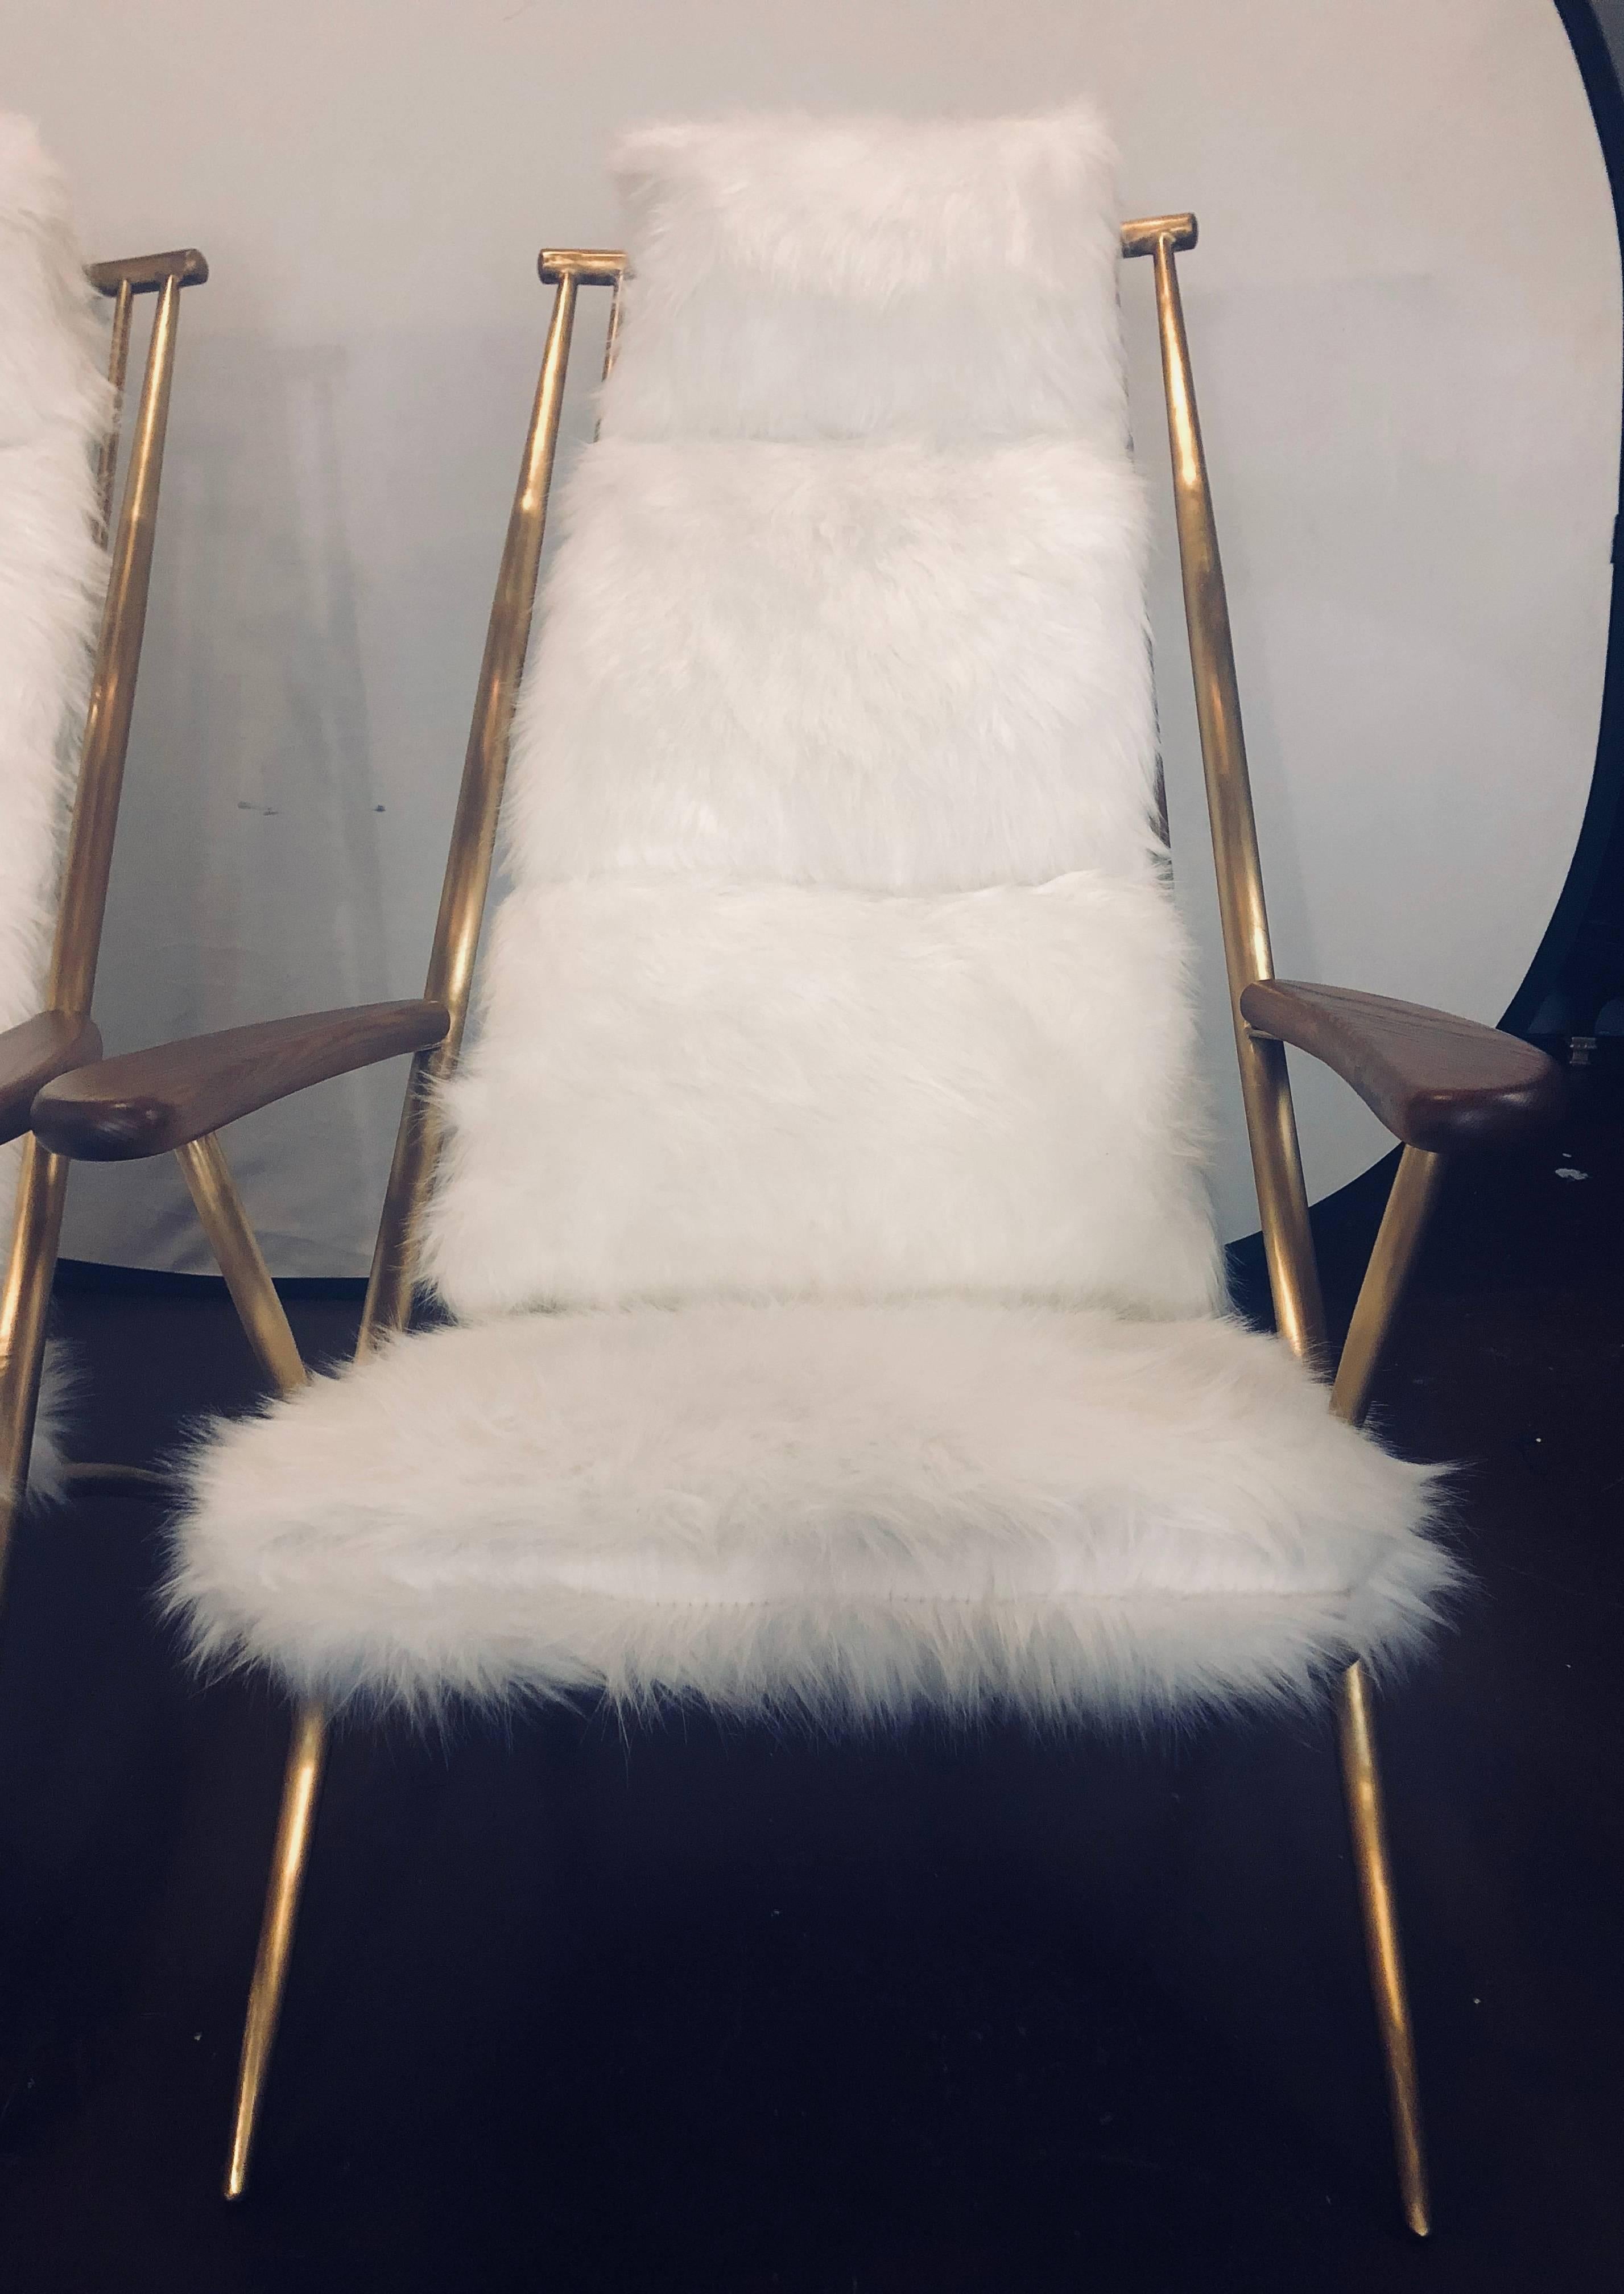 Paire de chaises longues en shearling de style Hollywood Regency, chacune avec un ottoman assorti. La paire est en métal doré, solide et robuste, avec une forme en échelle et des coussins surchargés qui sont étonnamment confortables. Cette paire de